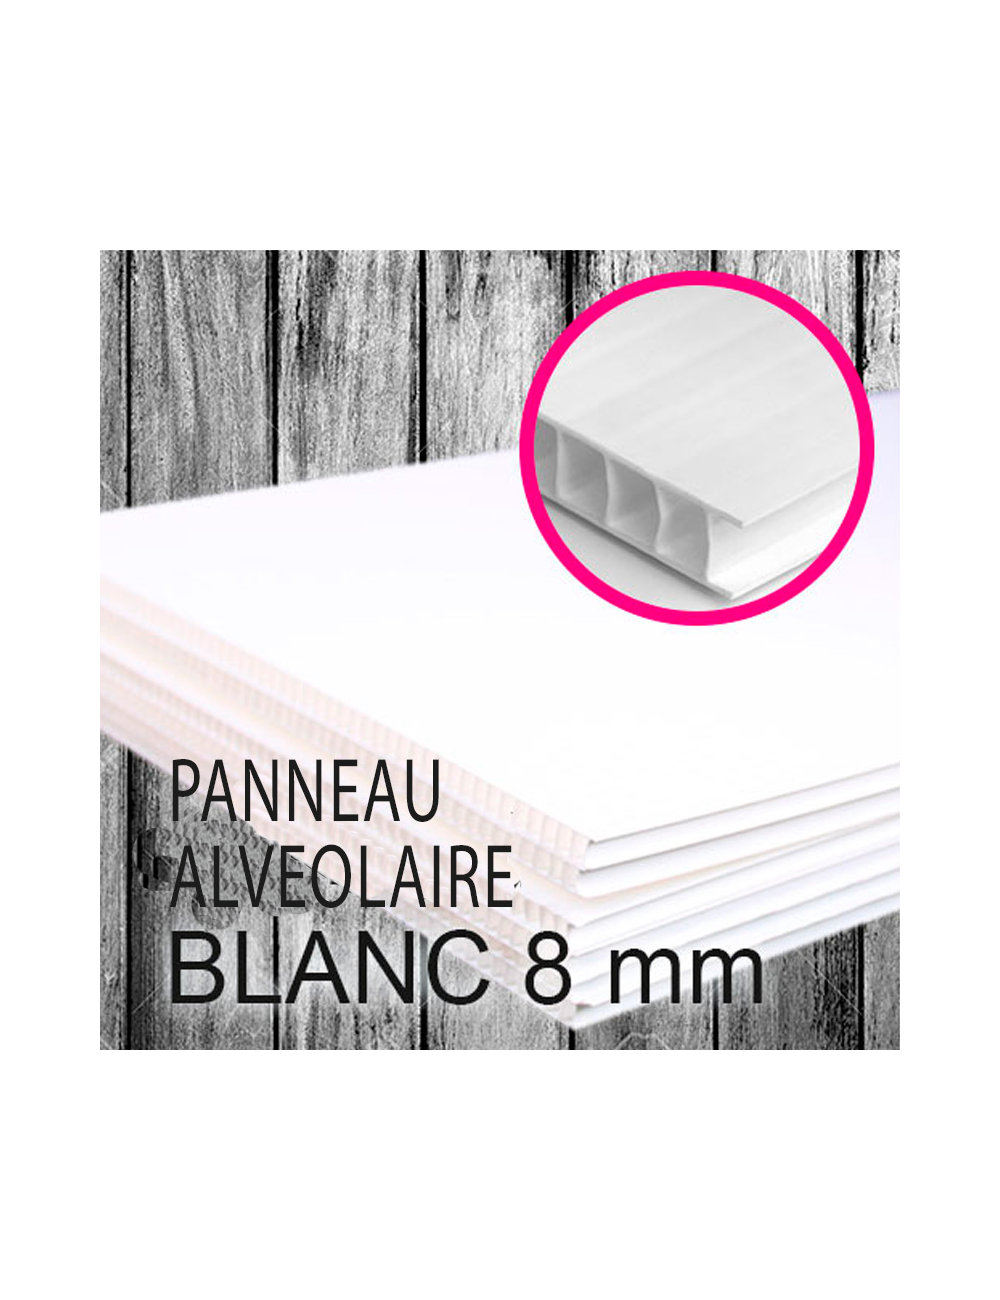 Panneau Alvéolaire 8 mm 120 x 80 cm VIERGE/BLANC